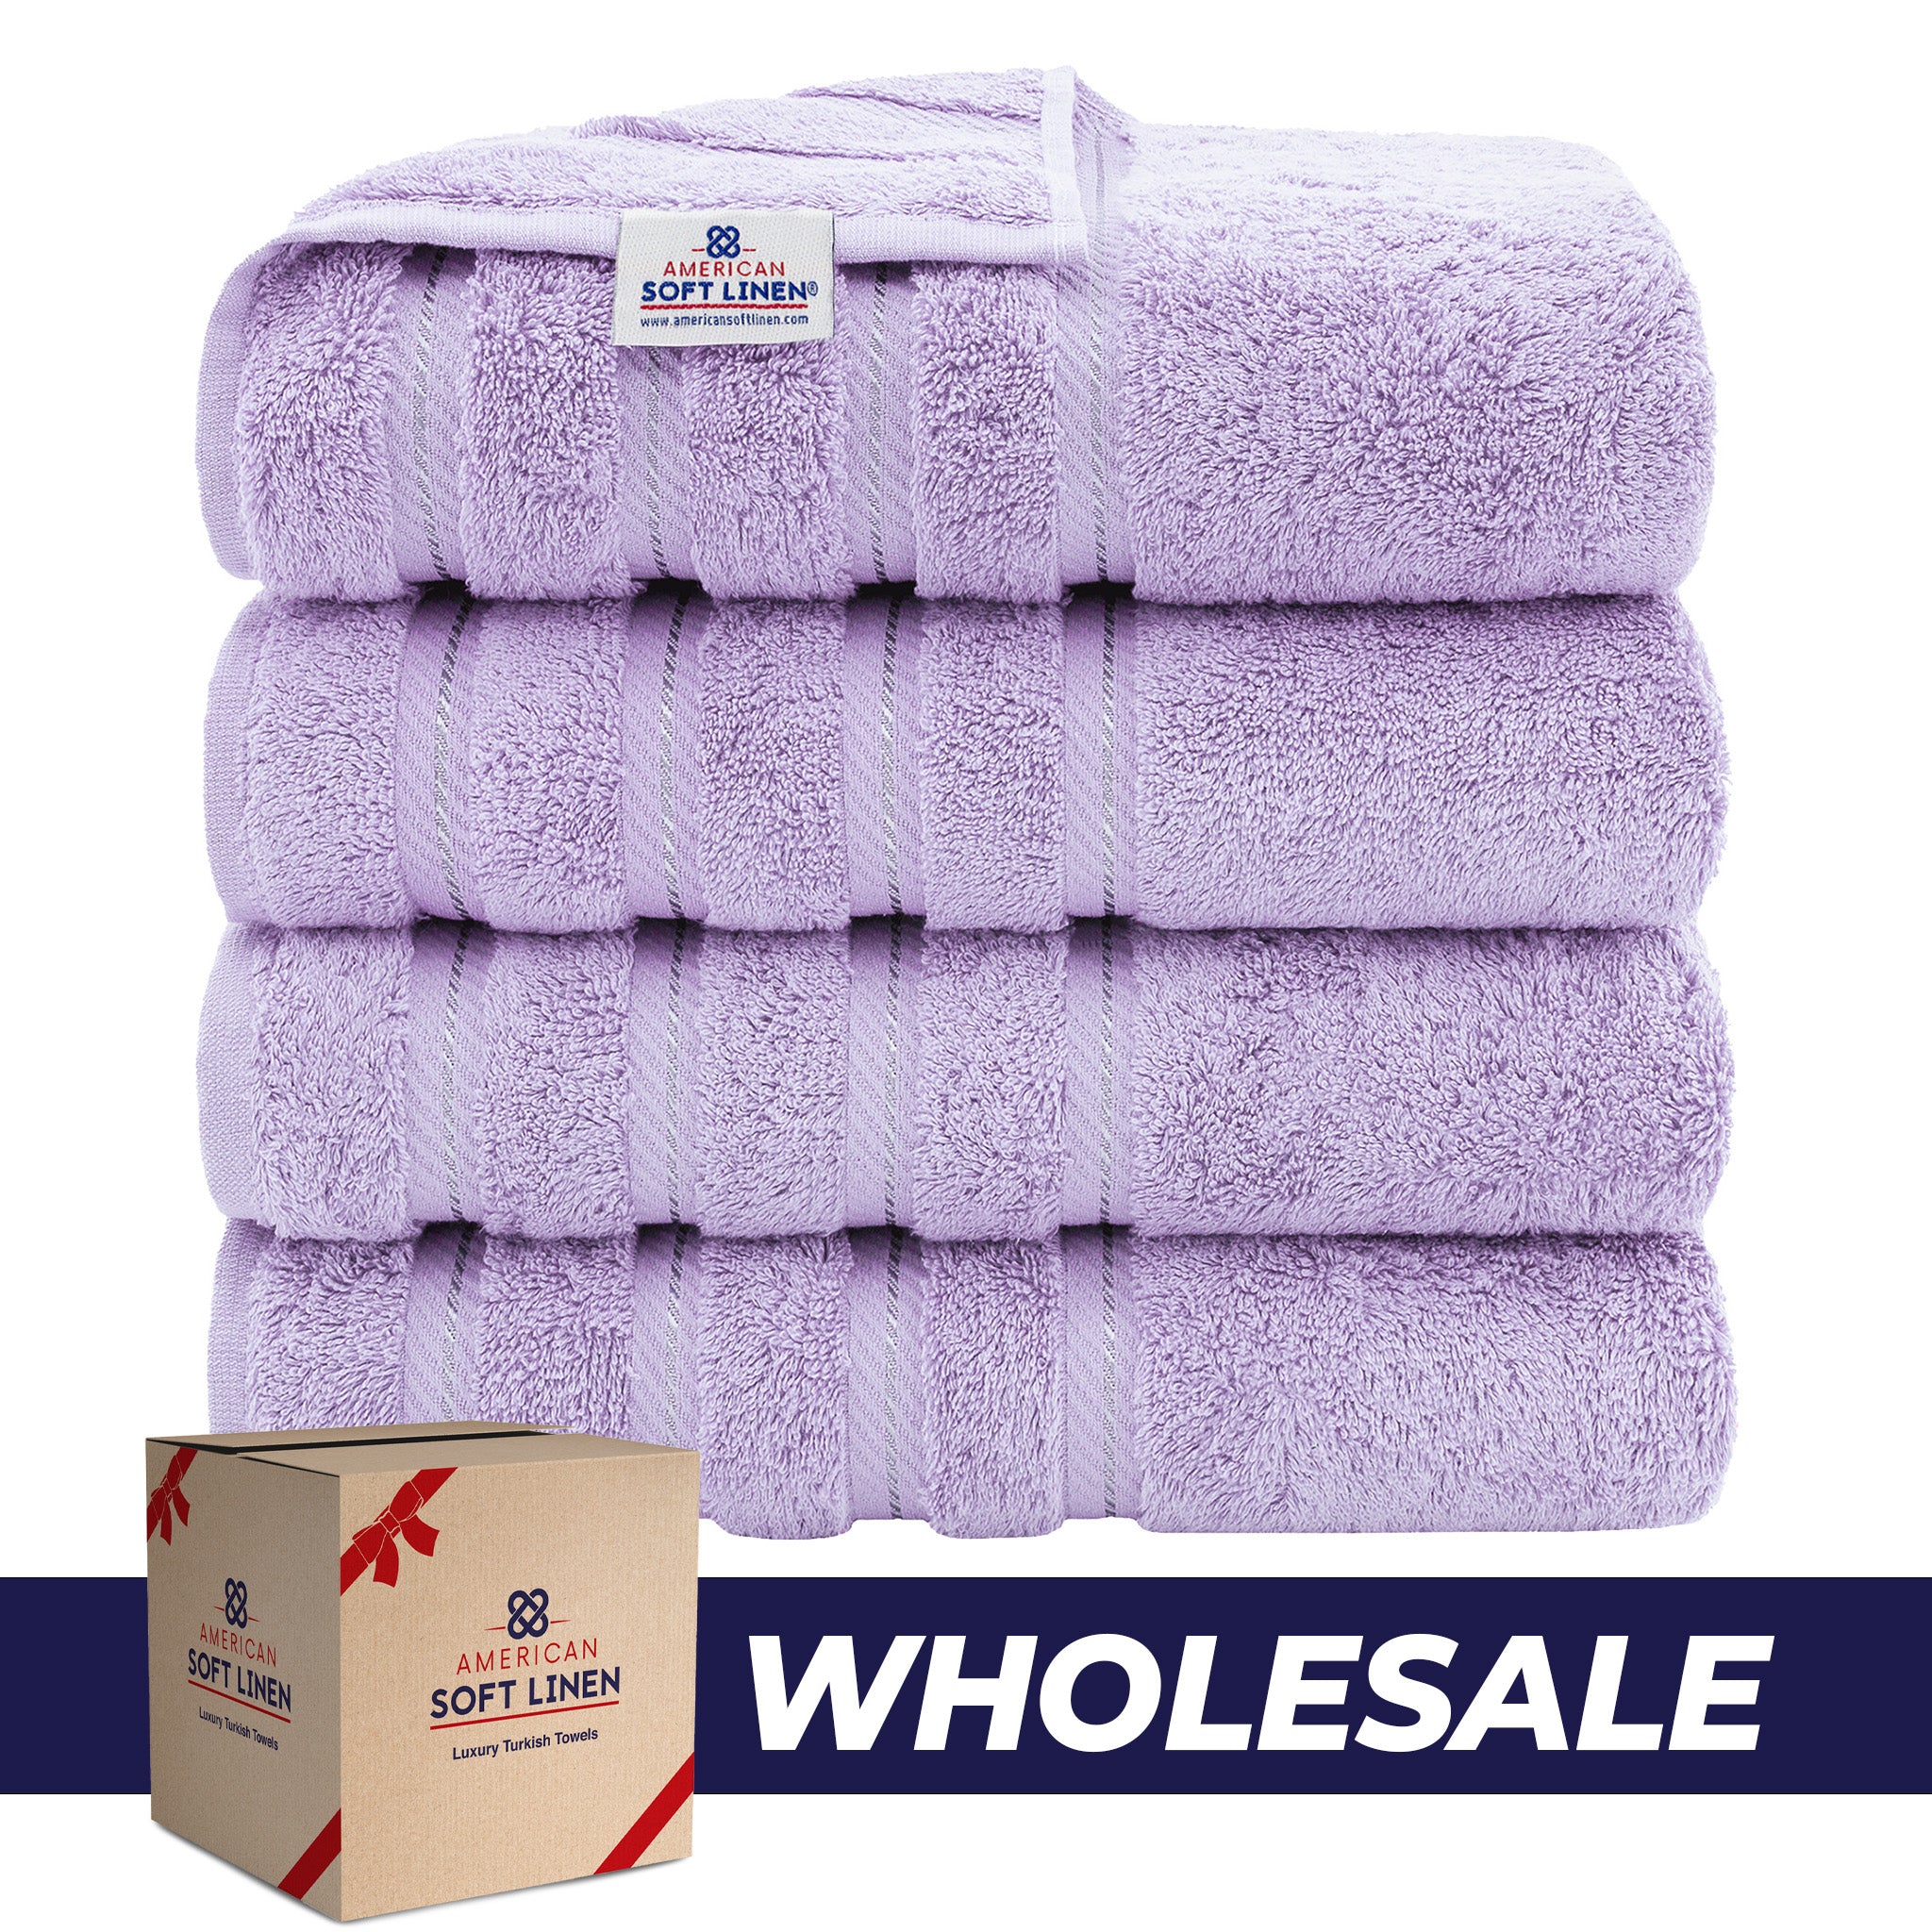 American Soft Linen 100% Turkish Cotton 4 Pack Bath Towel Set Wholesale lilac-0